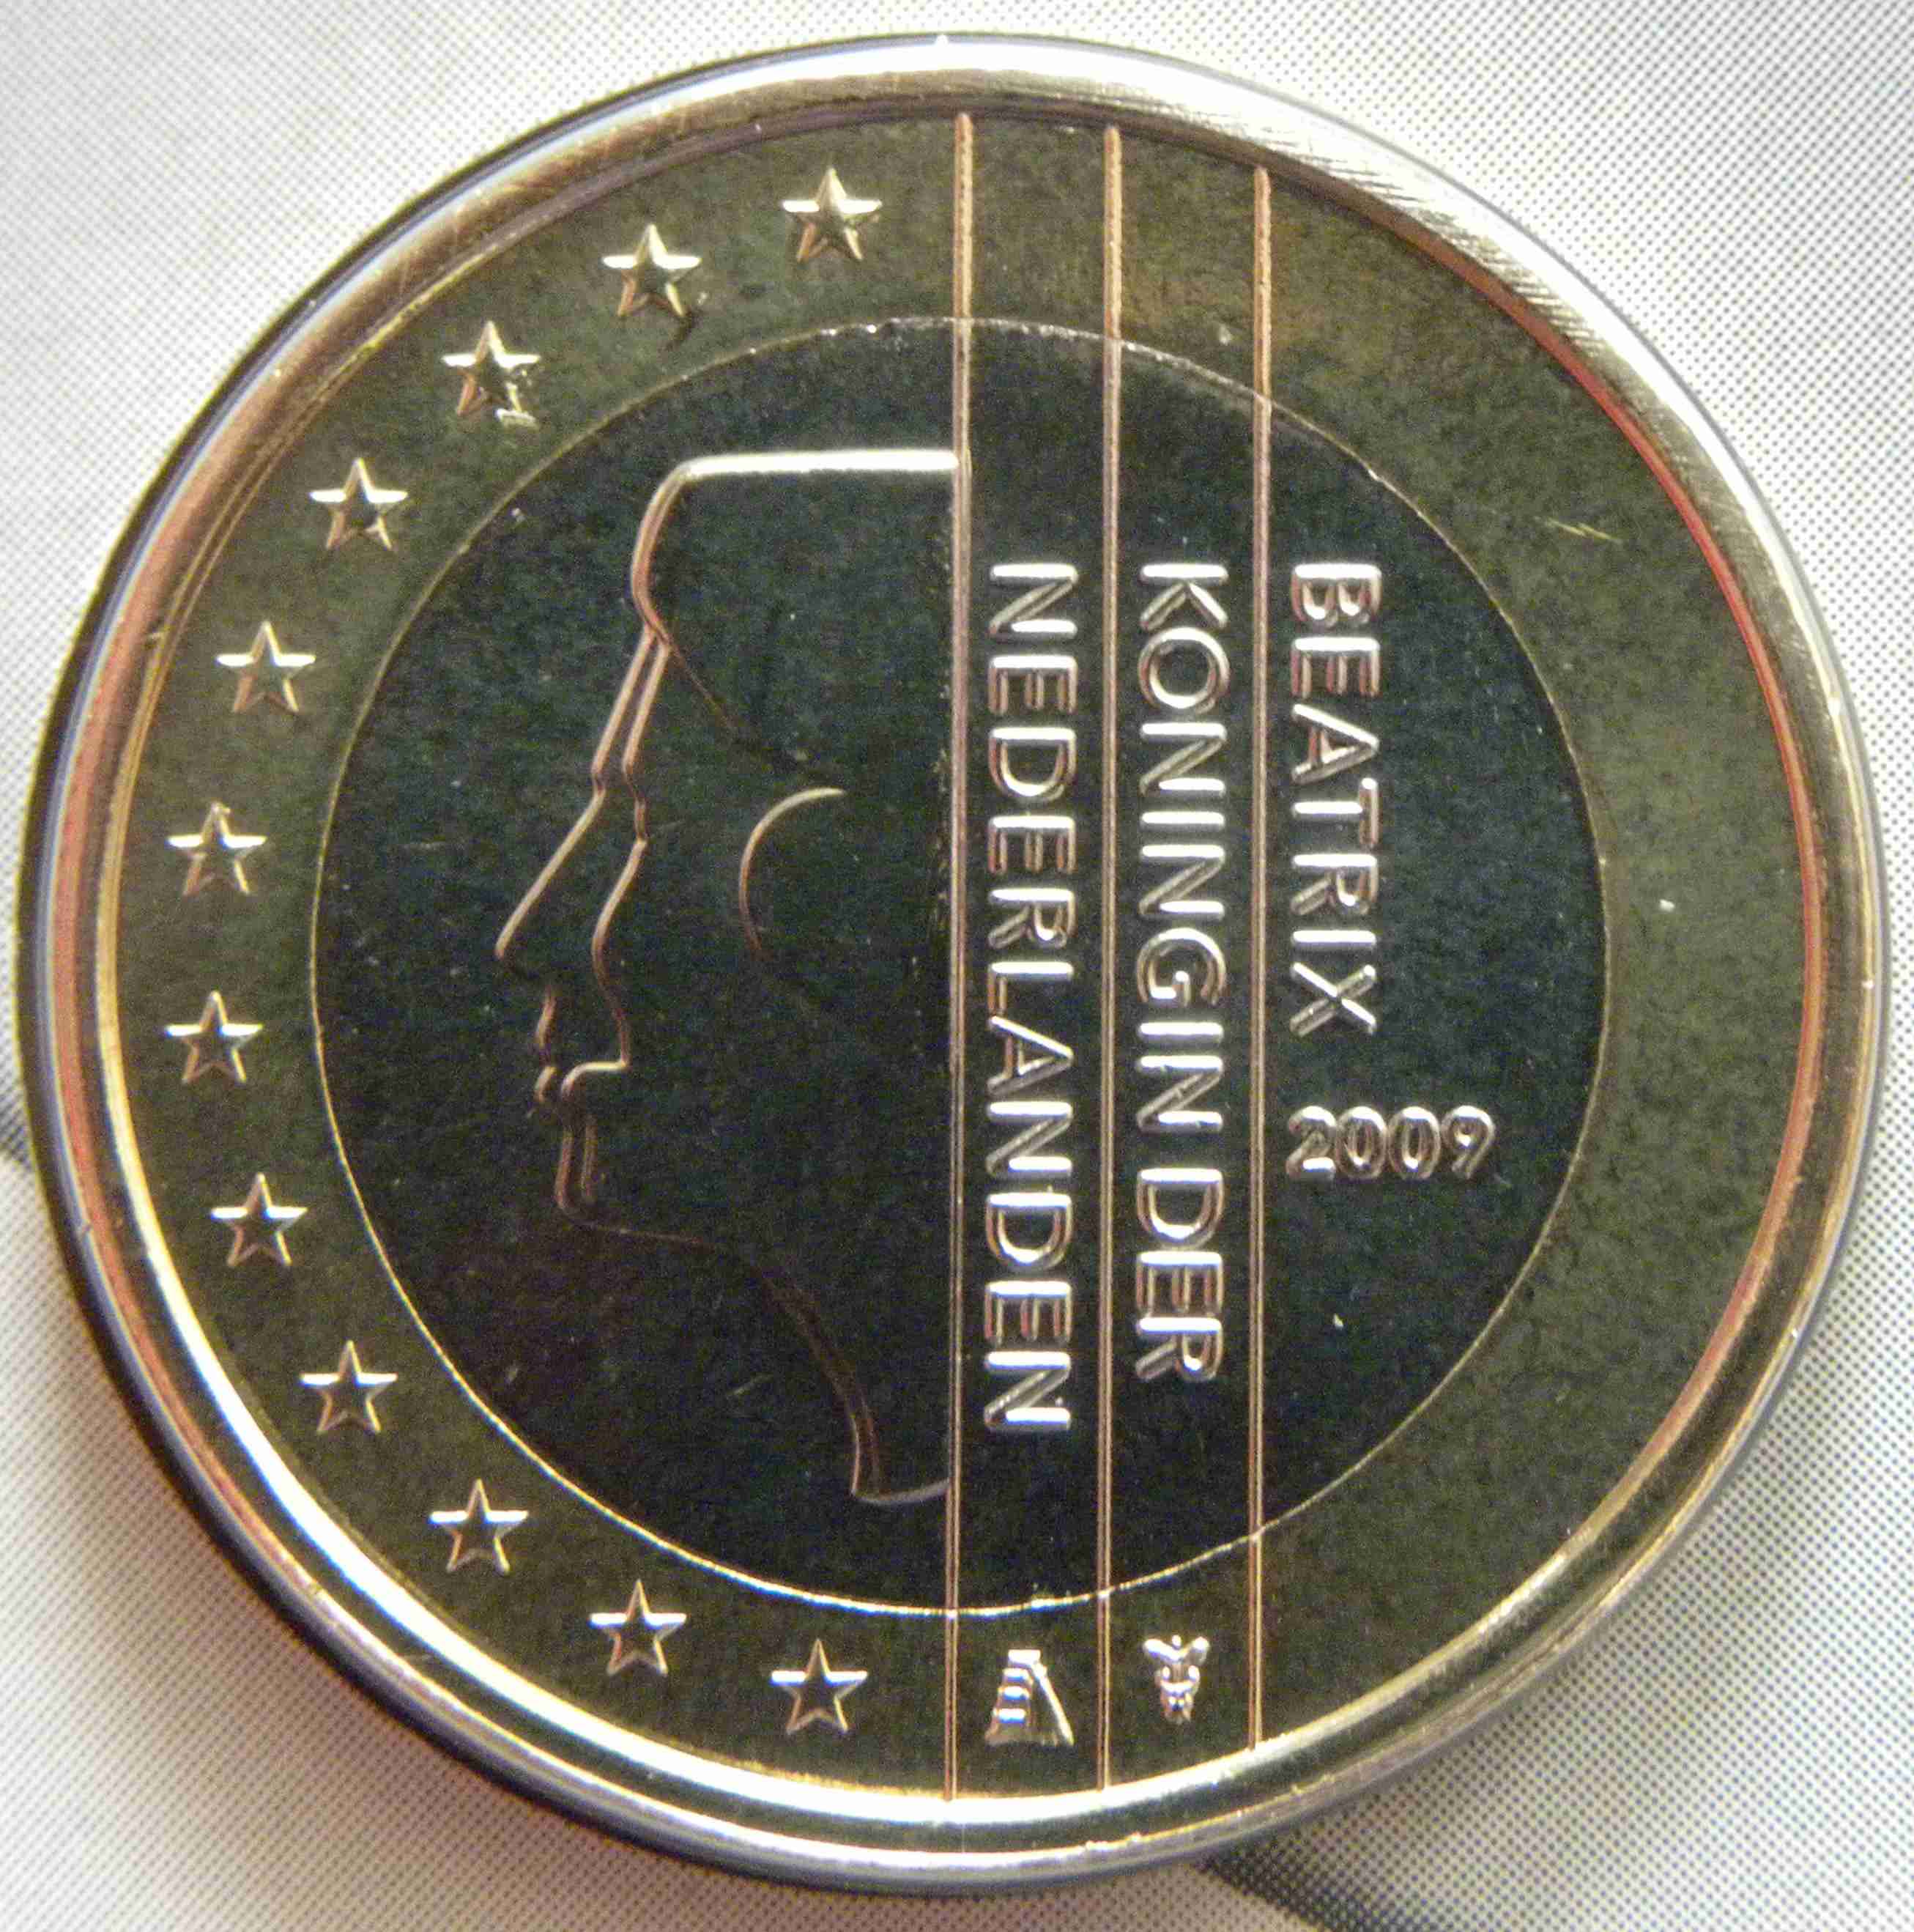 Niederlande 1 Euro Münze 2009 - euro-muenzen.tv - Der Online Euromünzen